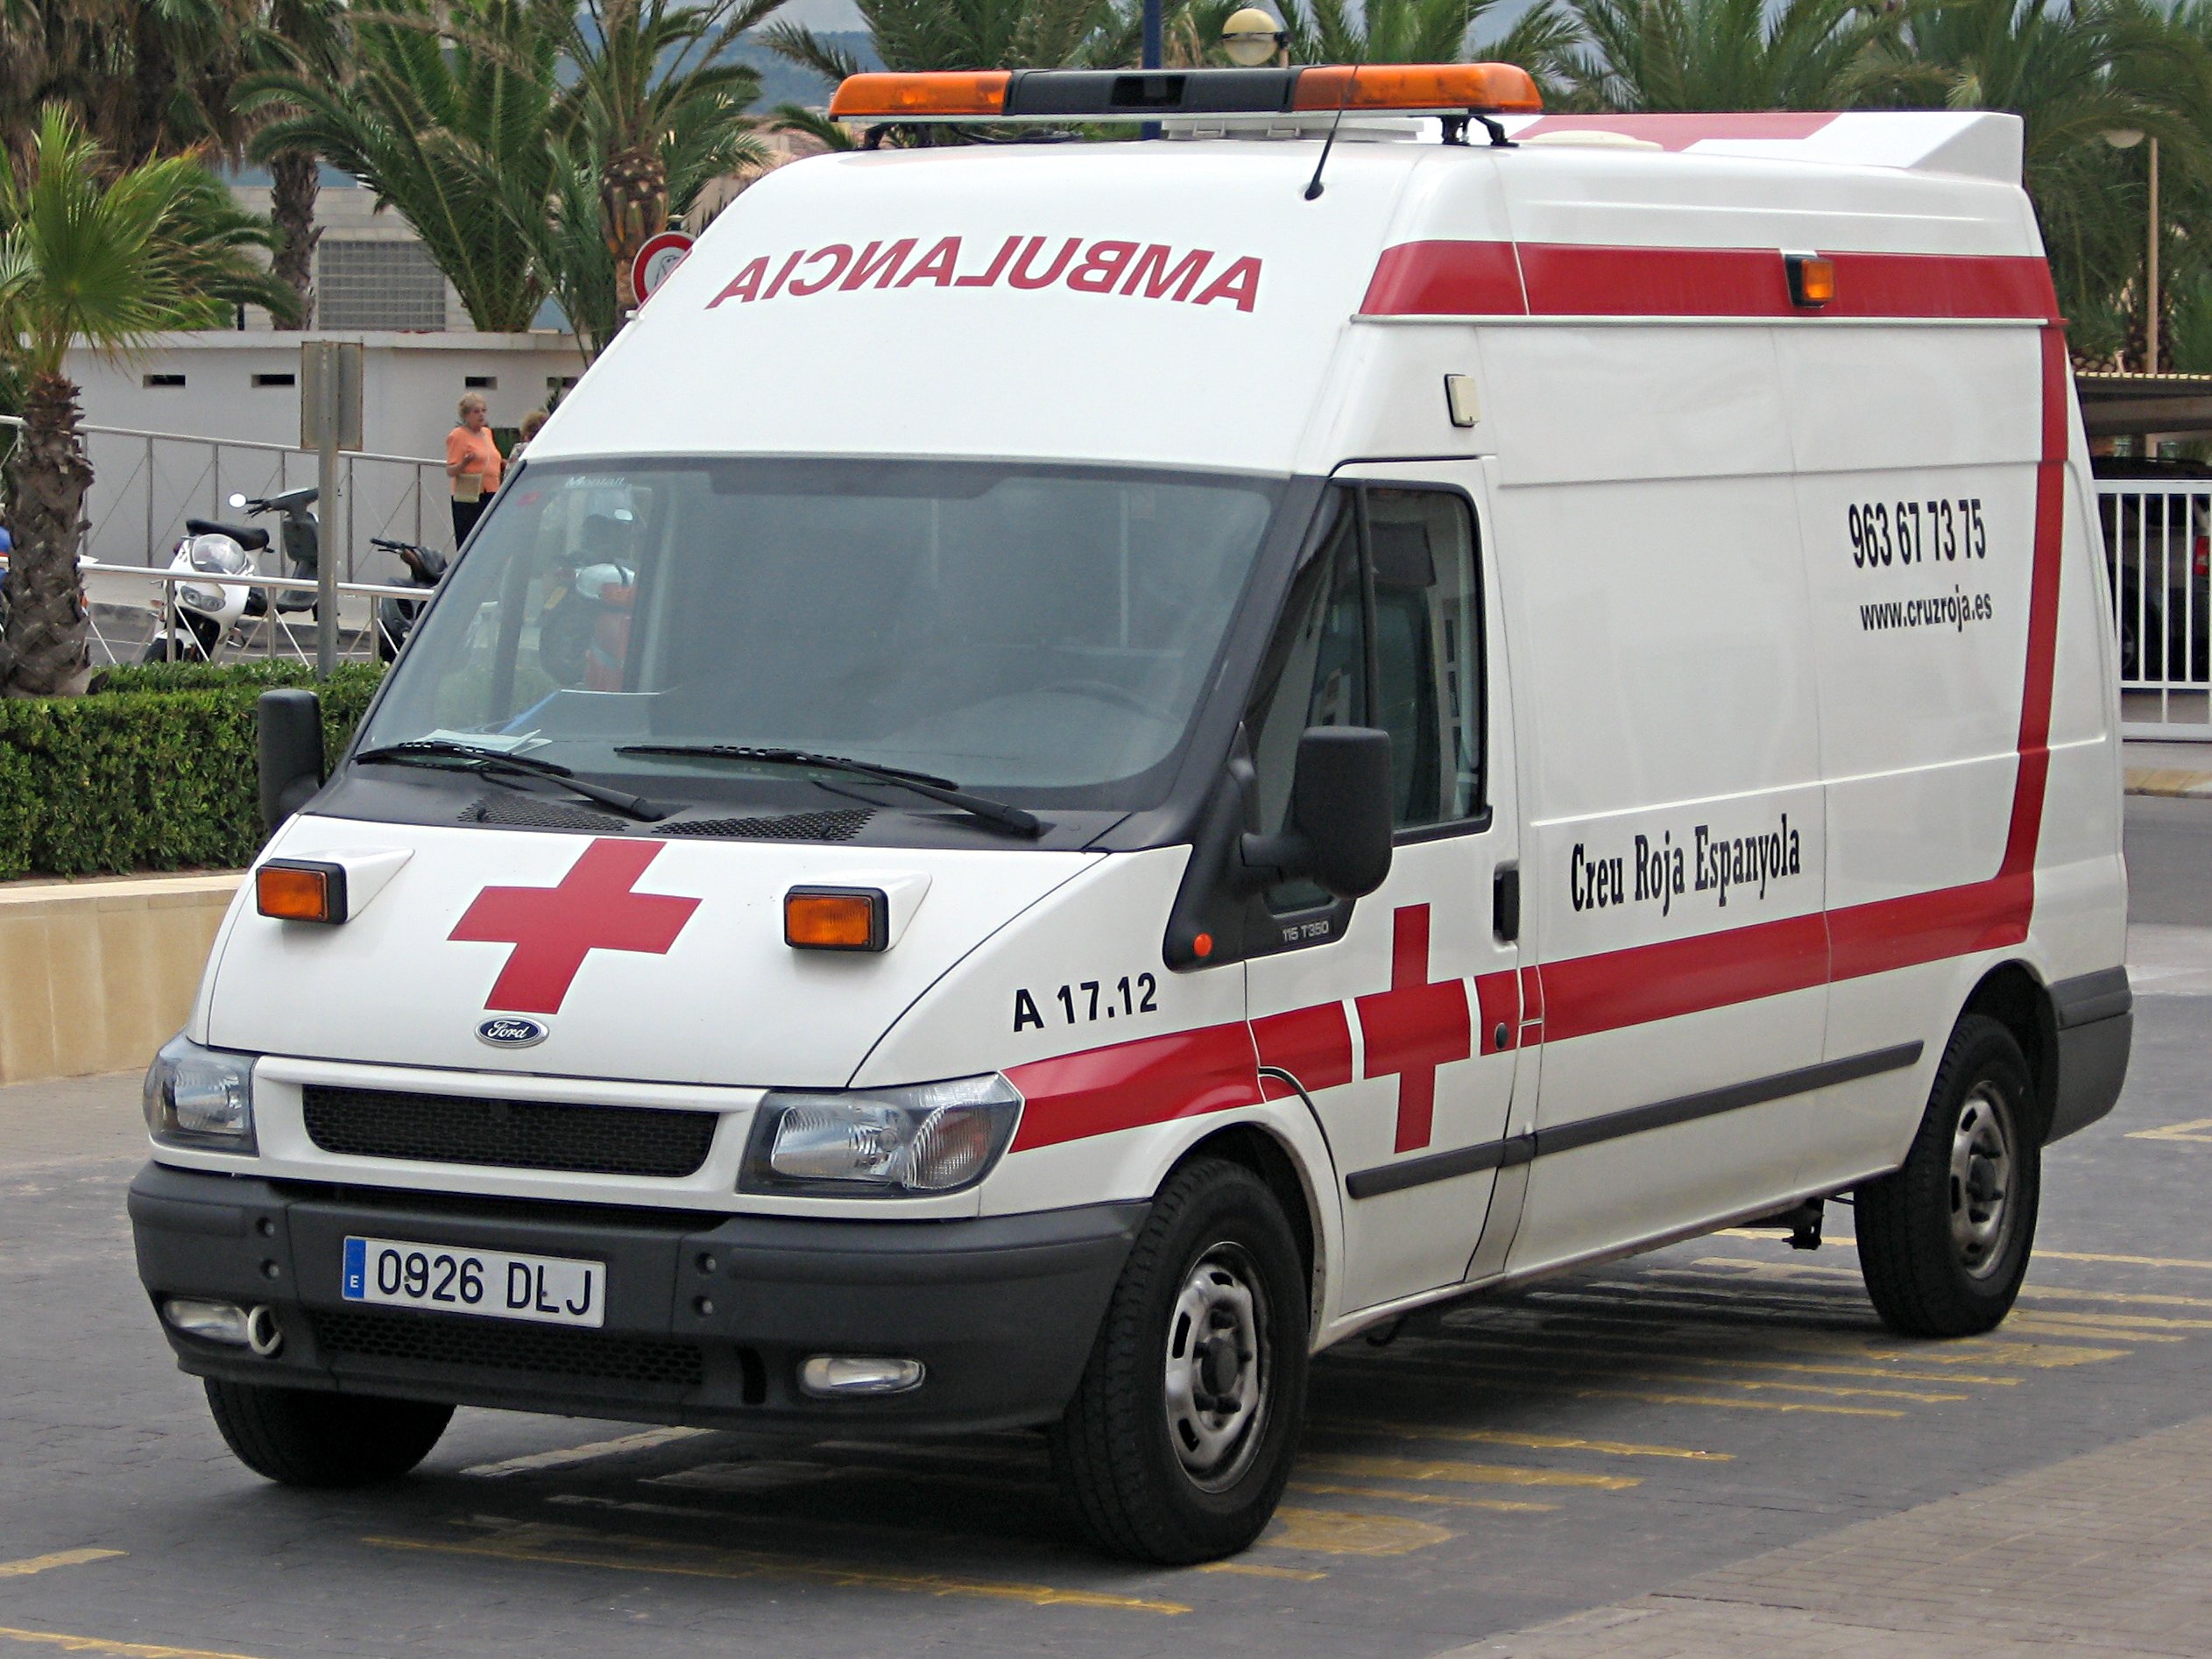 Ambulancia Creu Roja